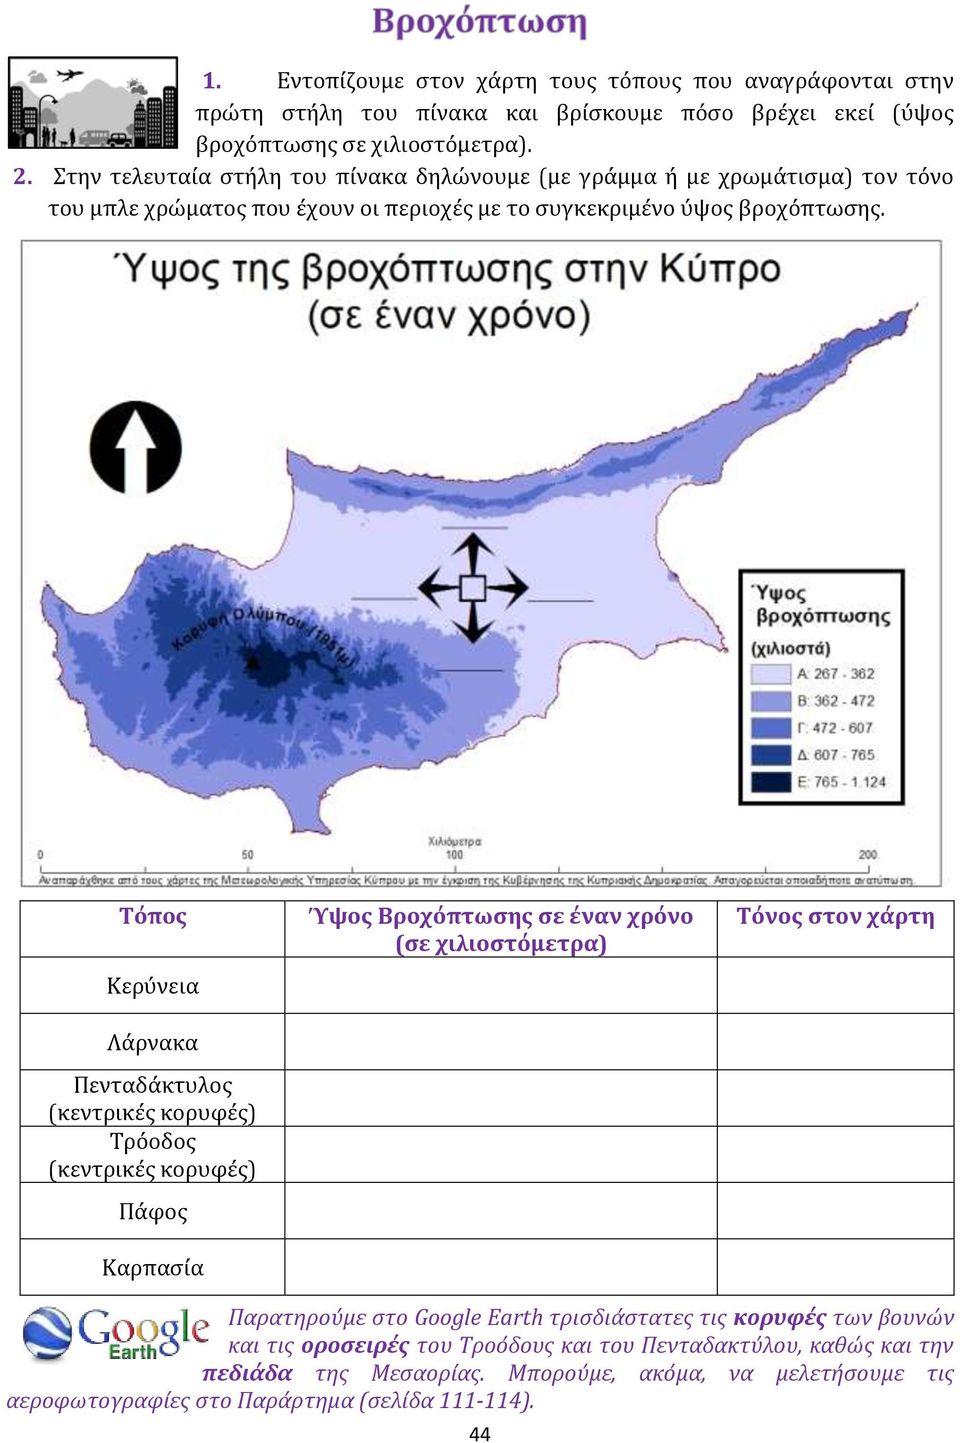 Τόπος Κερύνεια Λάρνακα Πενταδάκτυλος (κεντρικές κορυφές) Τρόοδος (κεντρικές κορυφές) Πάφος Καρπασία Ύψος Βροχόπτωσης σε έναν χρόνο (σε χιλιοστόμετρα) Τόνος στον χάρτη Παρατηρούμε